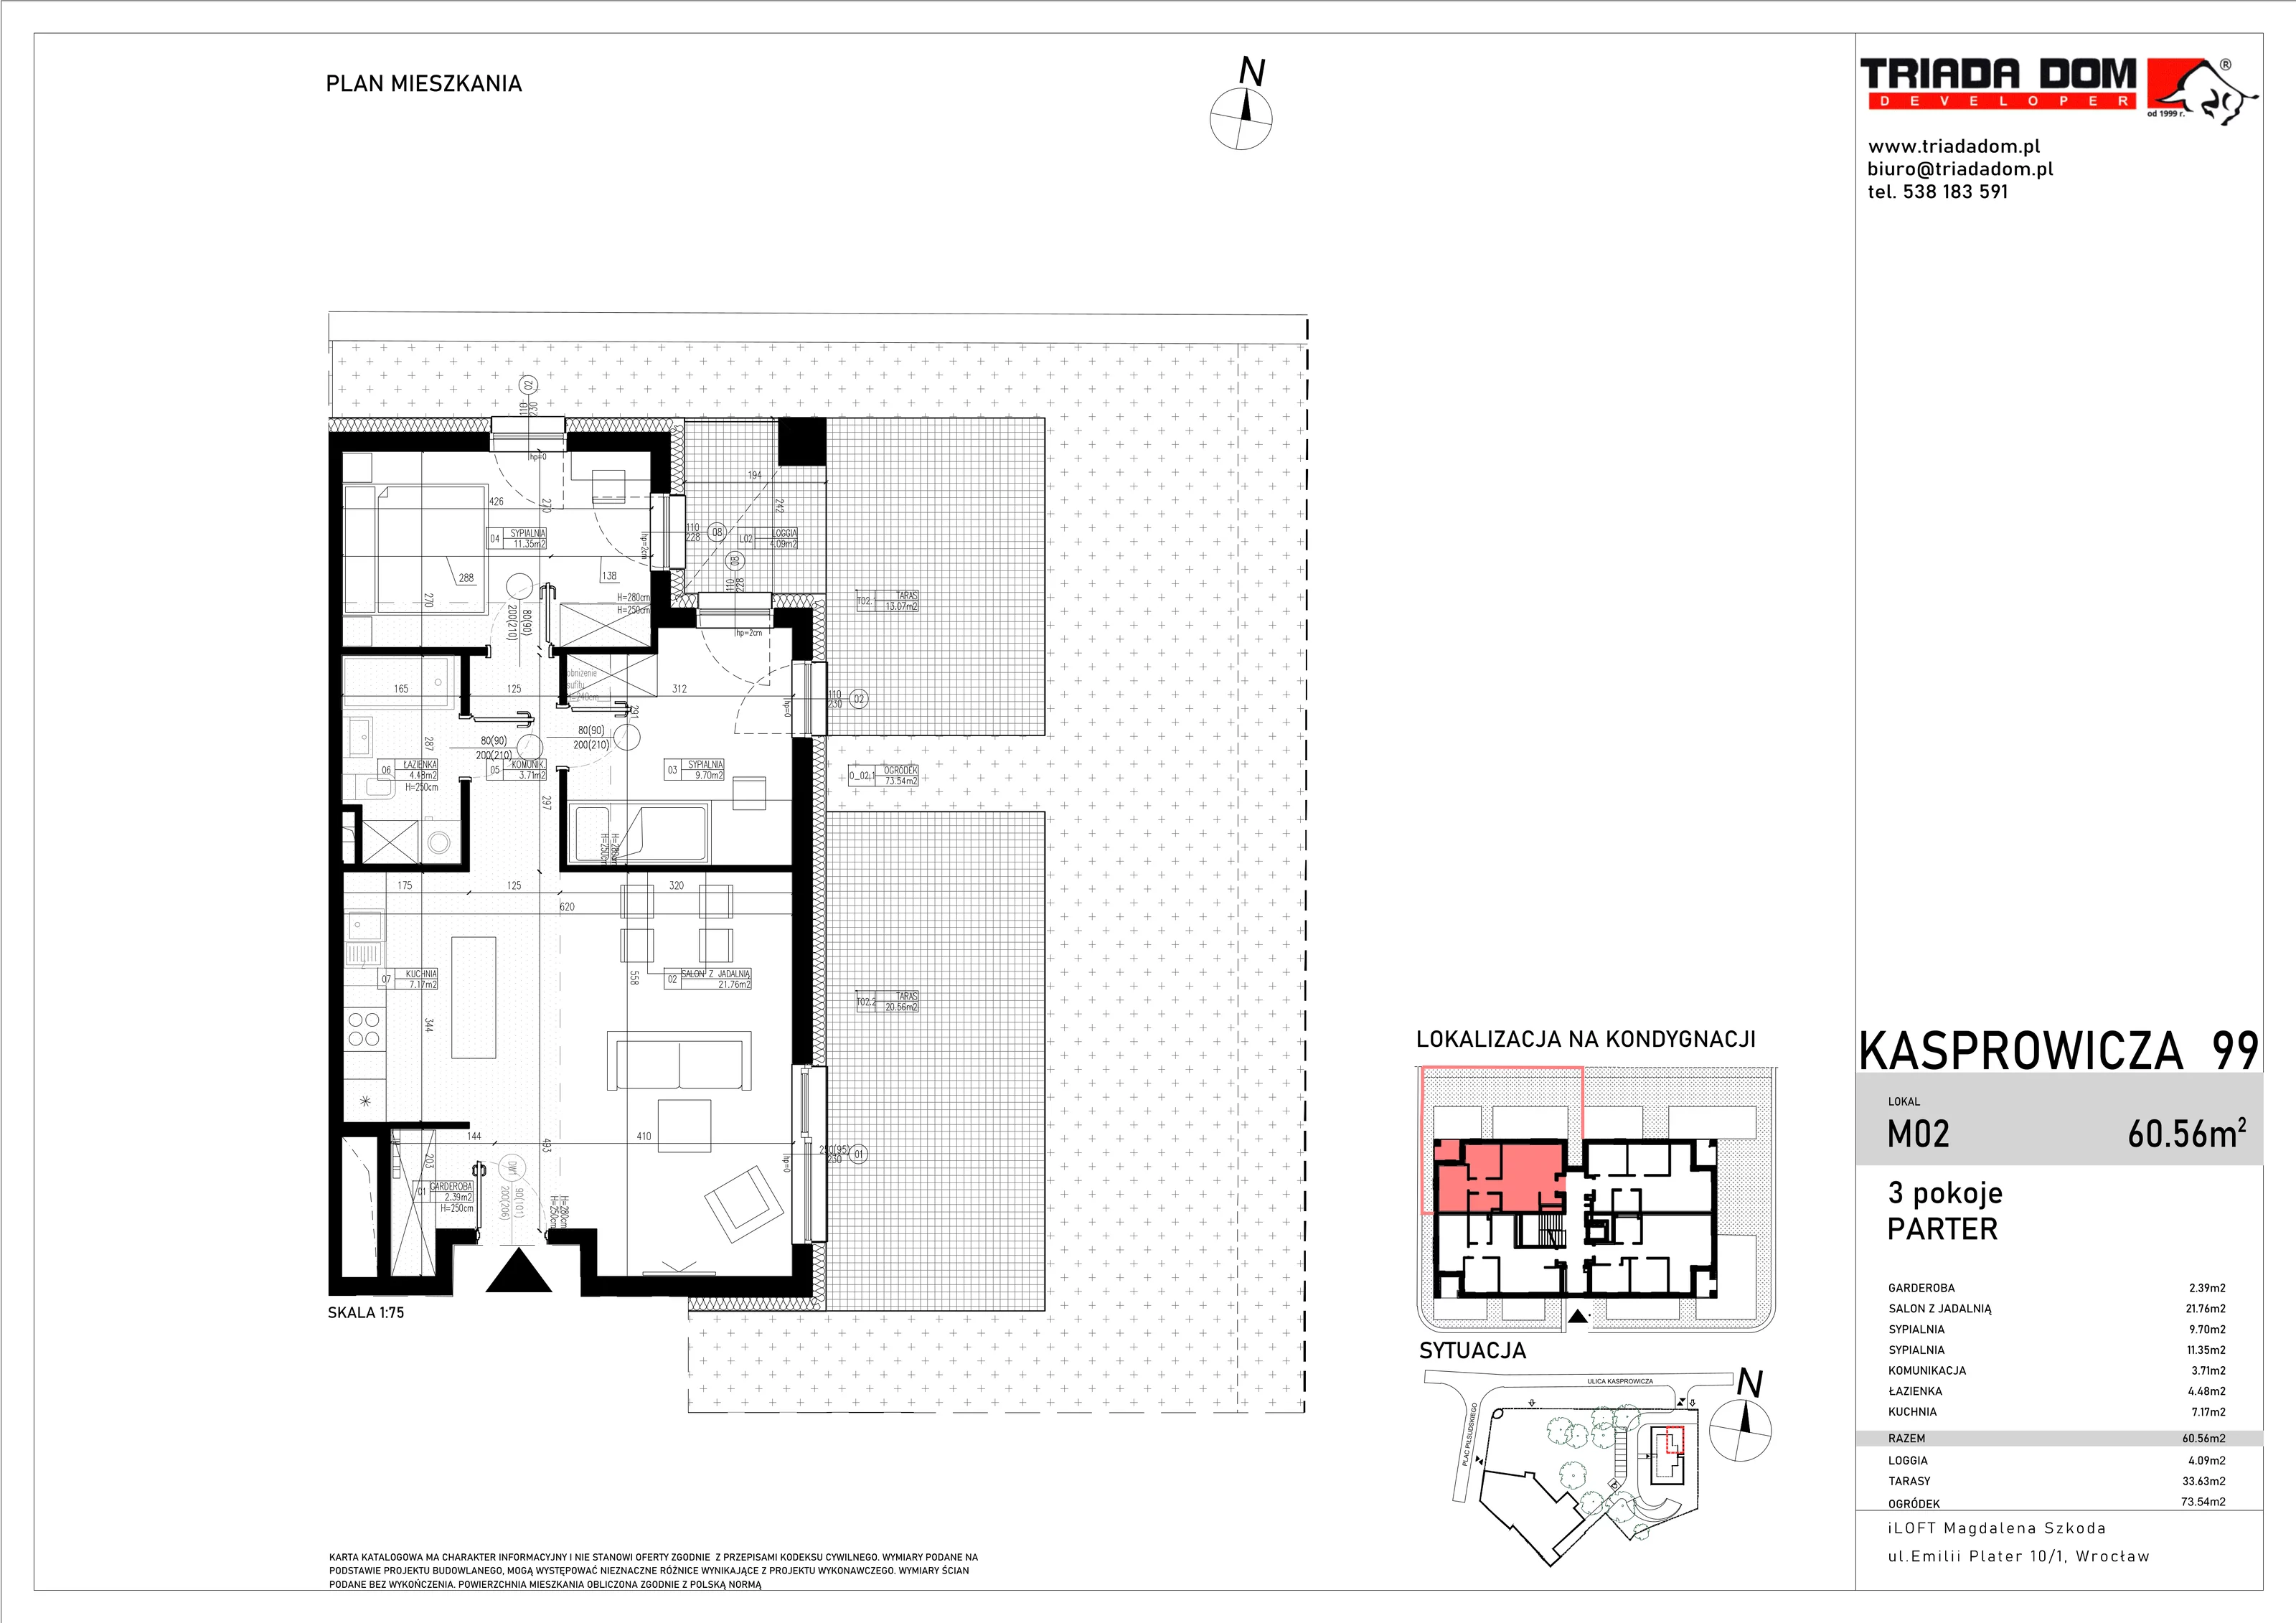 Apartament 60,56 m², parter, oferta nr M02, Apartamenty Kasprowicza Premium, Wrocław, Psie Pole-Zawidawie, Karłowice, al. Jana Kasprowicza 99